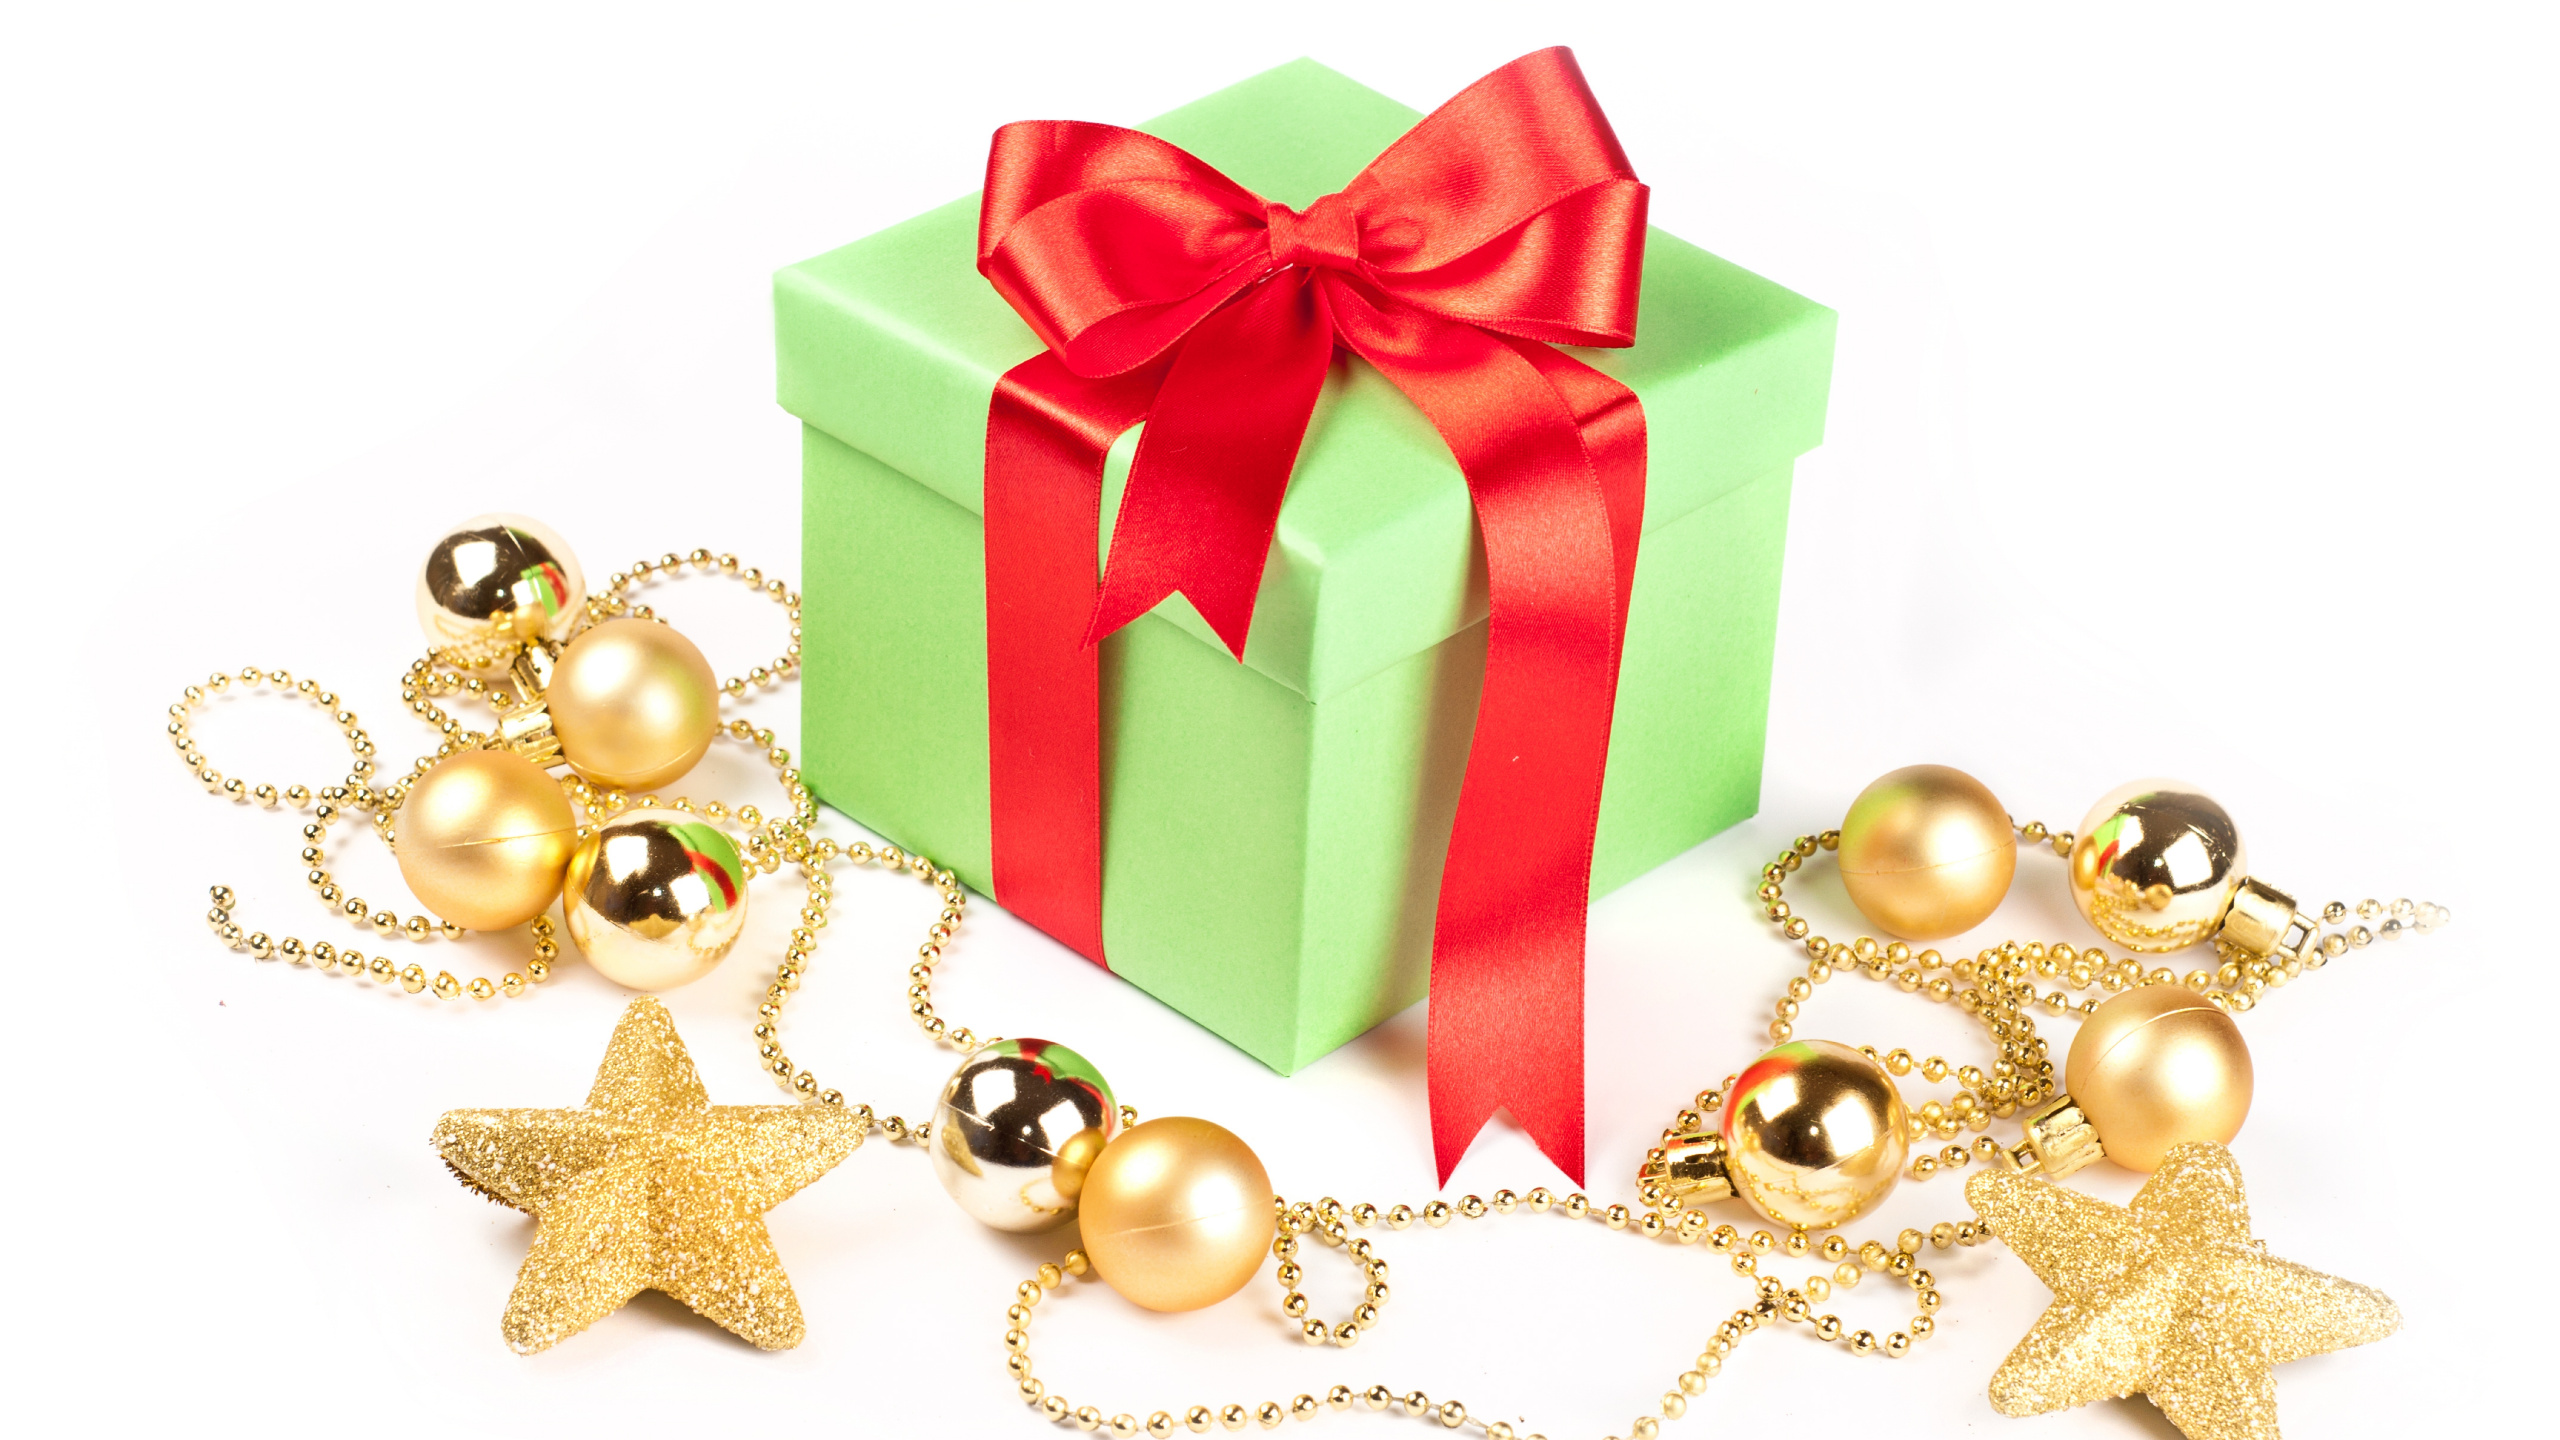 圣诞节的装饰品, 礼物, 圣诞节那天, 新的一年, 礼品包装 壁纸 2560x1440 允许